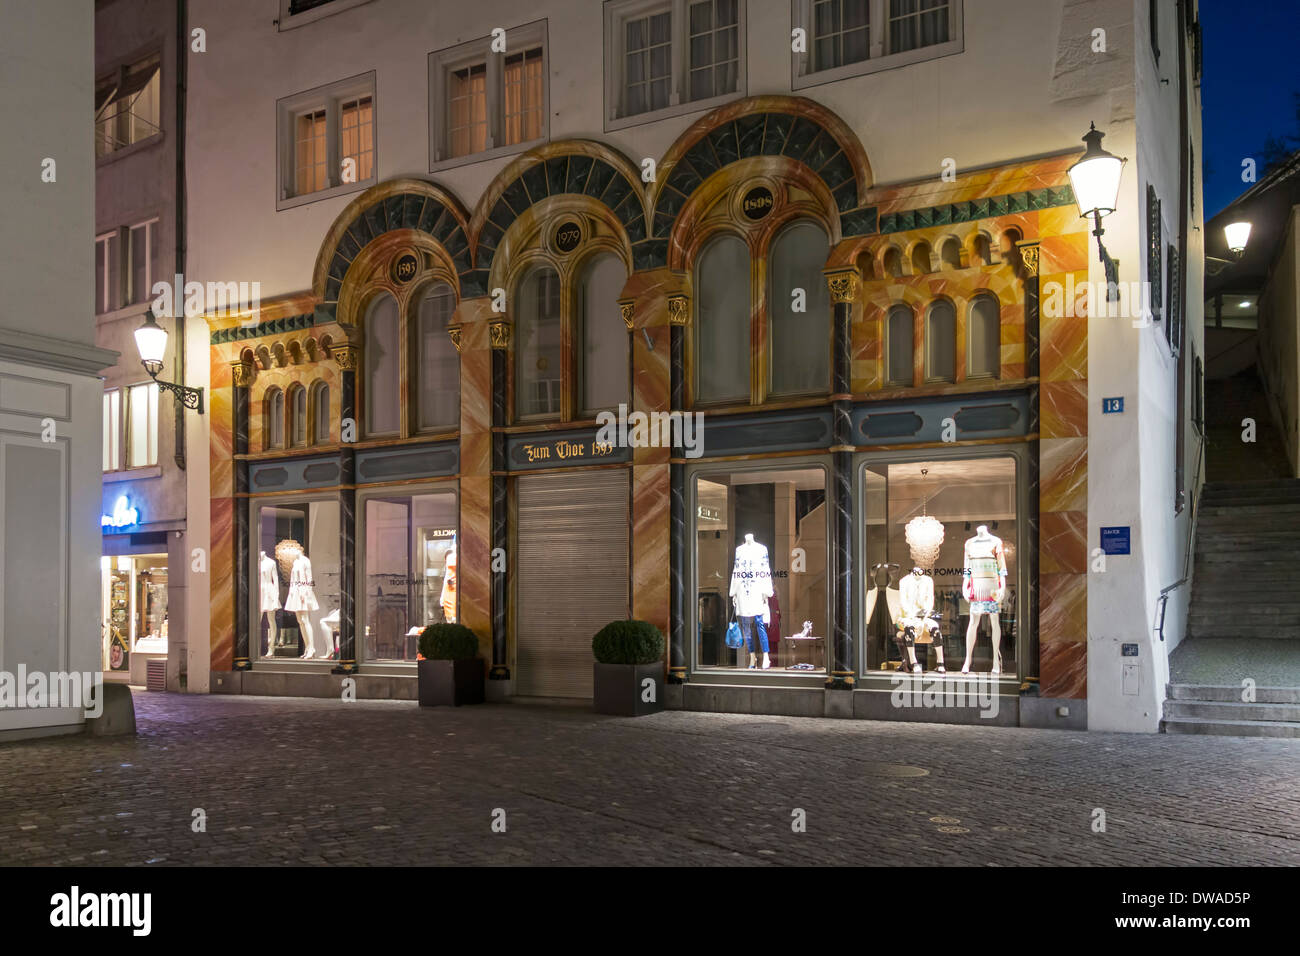 Schweiz-Zürich-Mode-Shop im alten Stadtzentrum Zum Thor 1593  Stockfotografie - Alamy